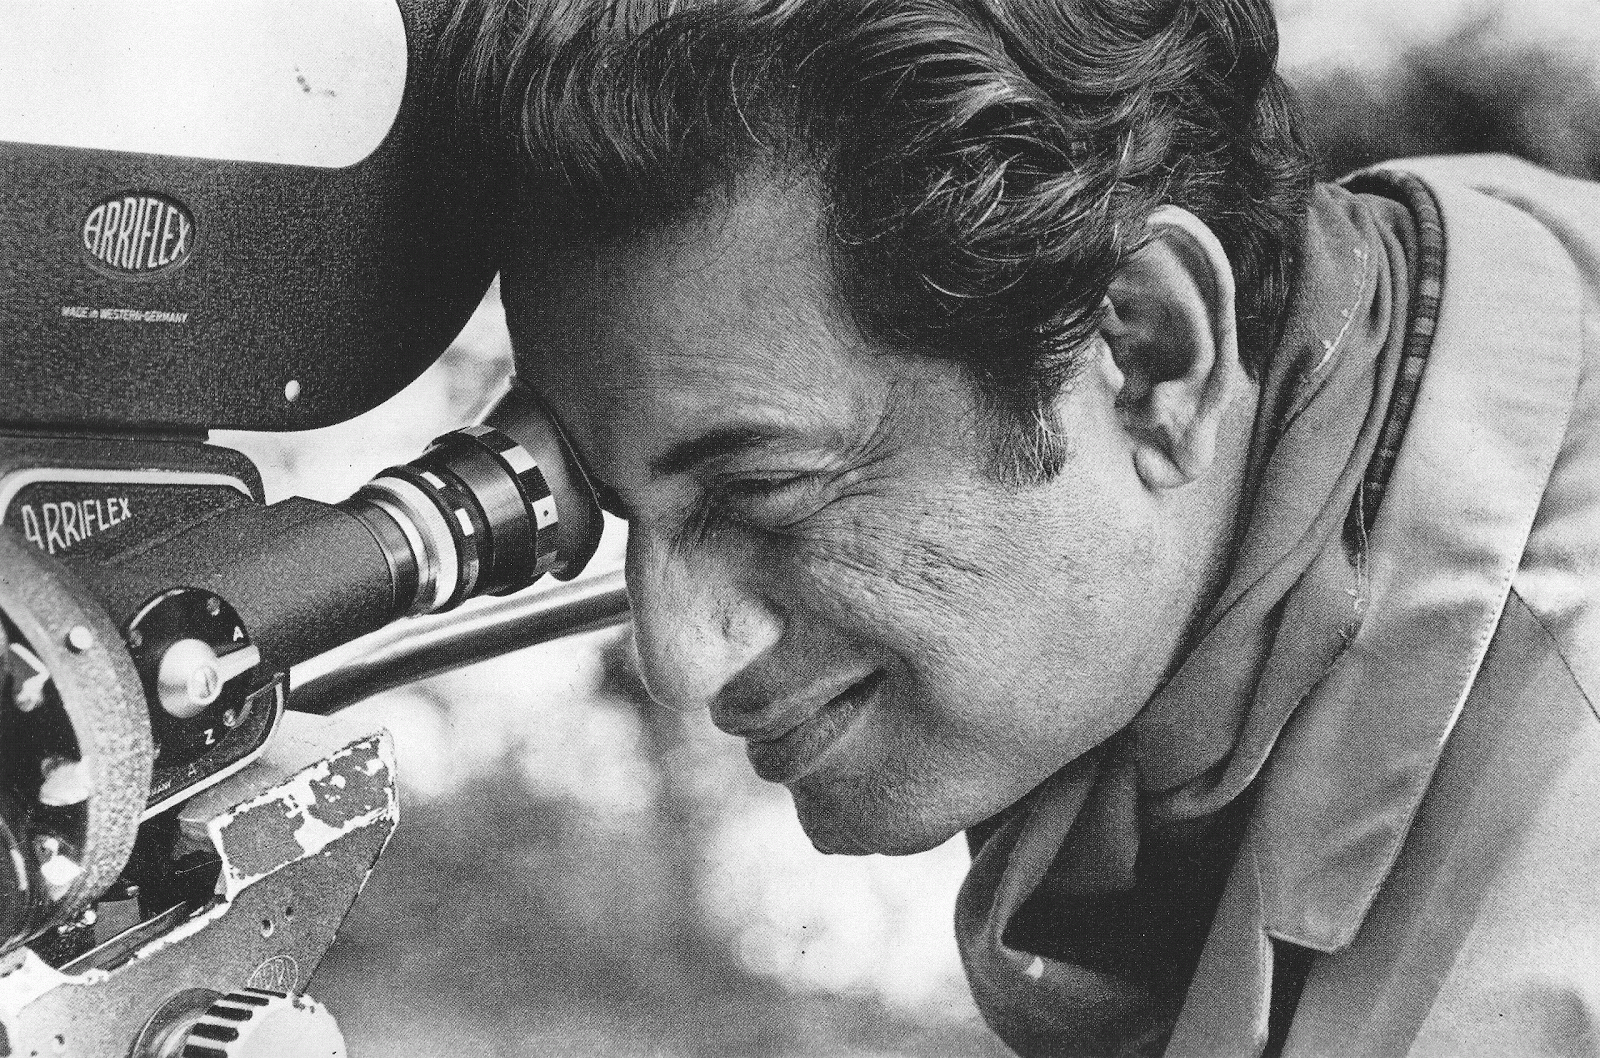 7 Art Cinema | Satyajit Ray | 1955 : La Complainte du sentier (Pather Panchali), 1956 : L'Invaincu (Aparajito), 1958 : La Pierre philosophale (Parash Pathar), 1959 : Le Salon de musique (Jalsaghar), 1959 : Le Monde d'Apu (Apur Sansar), 1960 : La Déesse (Devi), 1961 : Rabindranath Tagore (documentaire), 1961 : Trois Filles (Teen Kanya), 1962 : L'Expédition (Abhijaan), 1963 : La Grande Ville (Mahanagar), 1964 : Charulata, 1965 : Two (court-métrage), 1965 : Le Saint (Mahapurush), 1965 : Le Lâche (Kapurush), 1966 : Le Héros (Nayak), 1966 : Kanchenjungha, 1967 : Le Zoo (Chiriyakhana), 1969 : Les Aventures de Goopy et Bagha (Goopy Gyne Bagha Byne), 1970 : Des jours et des nuits dans la fort (Aranyer Din Ratri), 1971 : Sikkim (documentaire), 1971 : L'Adversaire (Pratidwandi), 1972 : The Inner Eye (documentaire), 1973 : Tonnerres lointains (Ashani Sanket), 1974 : Company Limited (Seemabaddha), 1974 : La Forteresse d'or (Sonar Kella), 1976 : Bala, 1976 : Jana Aranya, 1977 : Les Joueurs d'échecs (Shatranj Ke Khilari), 1979 : Le Dieu Eléphant (Joi Baba Felunath), 1980 : Le Royaume des diamants (Heerak Rajar Deshe), 1981 : Pikoor Diary (court-métrage), 1984 : Délivrance (Sadgati) (tlfilm), 1984 : La Maison et le Monde (Ghare Baire), 1987 : Sukumar Ray (documentaire), 1990 : Un ennemi du peuple (Ganashatru), 1990 : Les Branches de l'arbre (Shakha Proshakha), 1991 : Le Visiteur (Agantuk) | Realisateur, Ecrivain et Compositeur indien bengali | Photographie